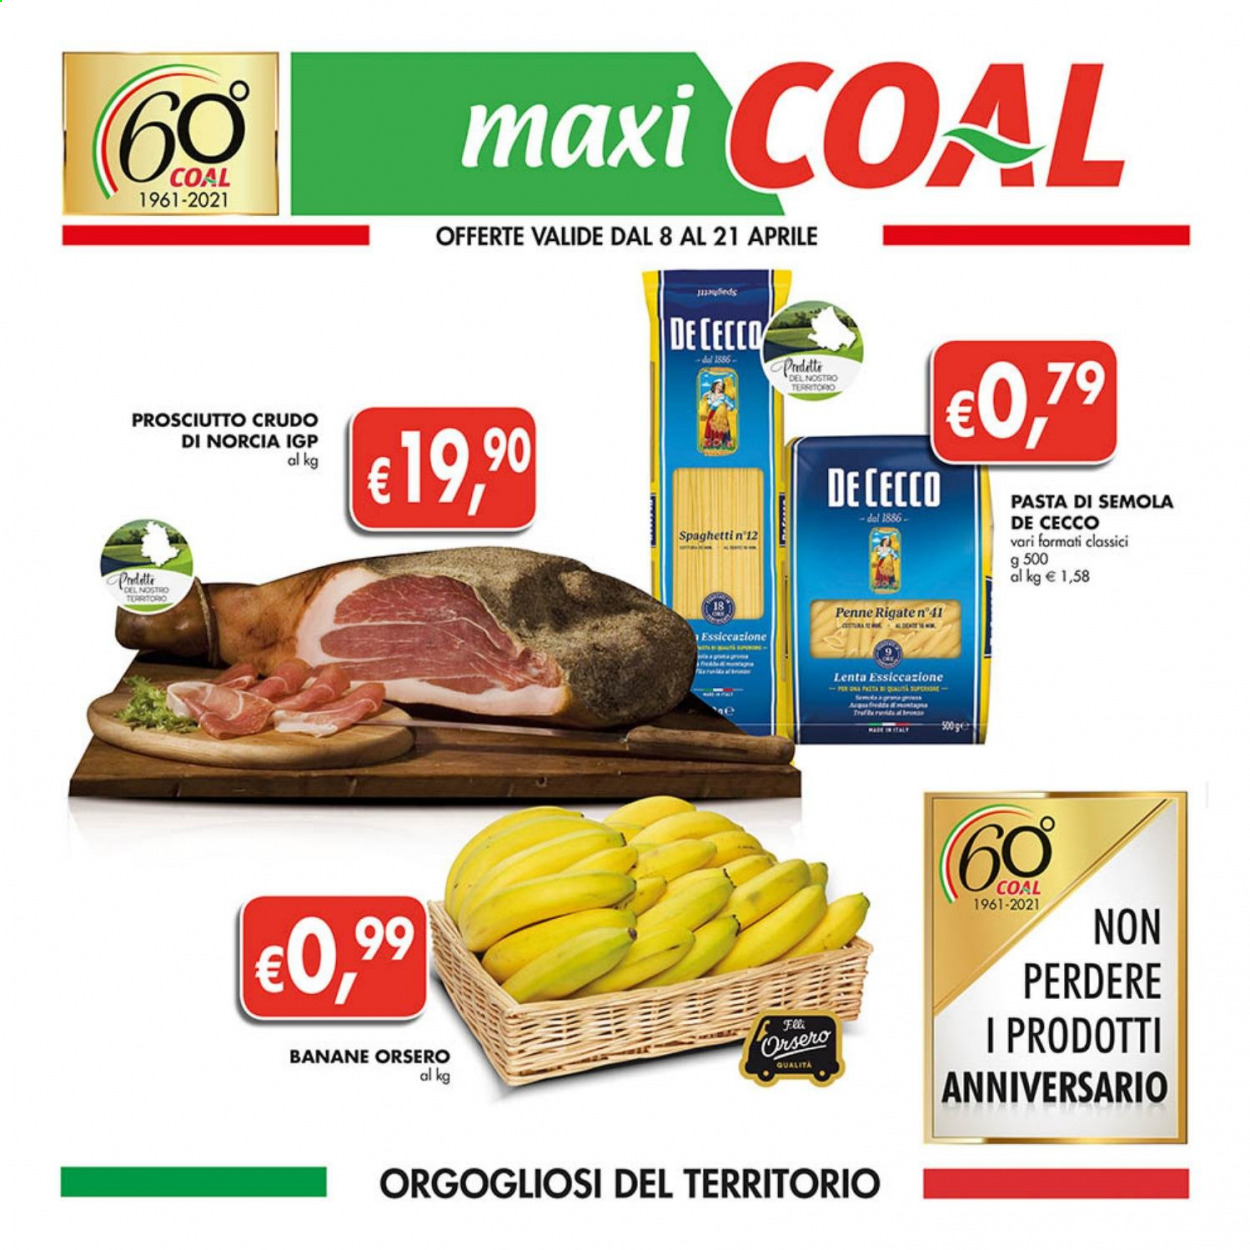 thumbnail - Volantino COAL - 8/4/2021 - 21/4/2021 - Prodotti in offerta - banane, prosciutto, prosciutto crudo, De Cecco, spaghetti, pasta, penne. Pagina 1.